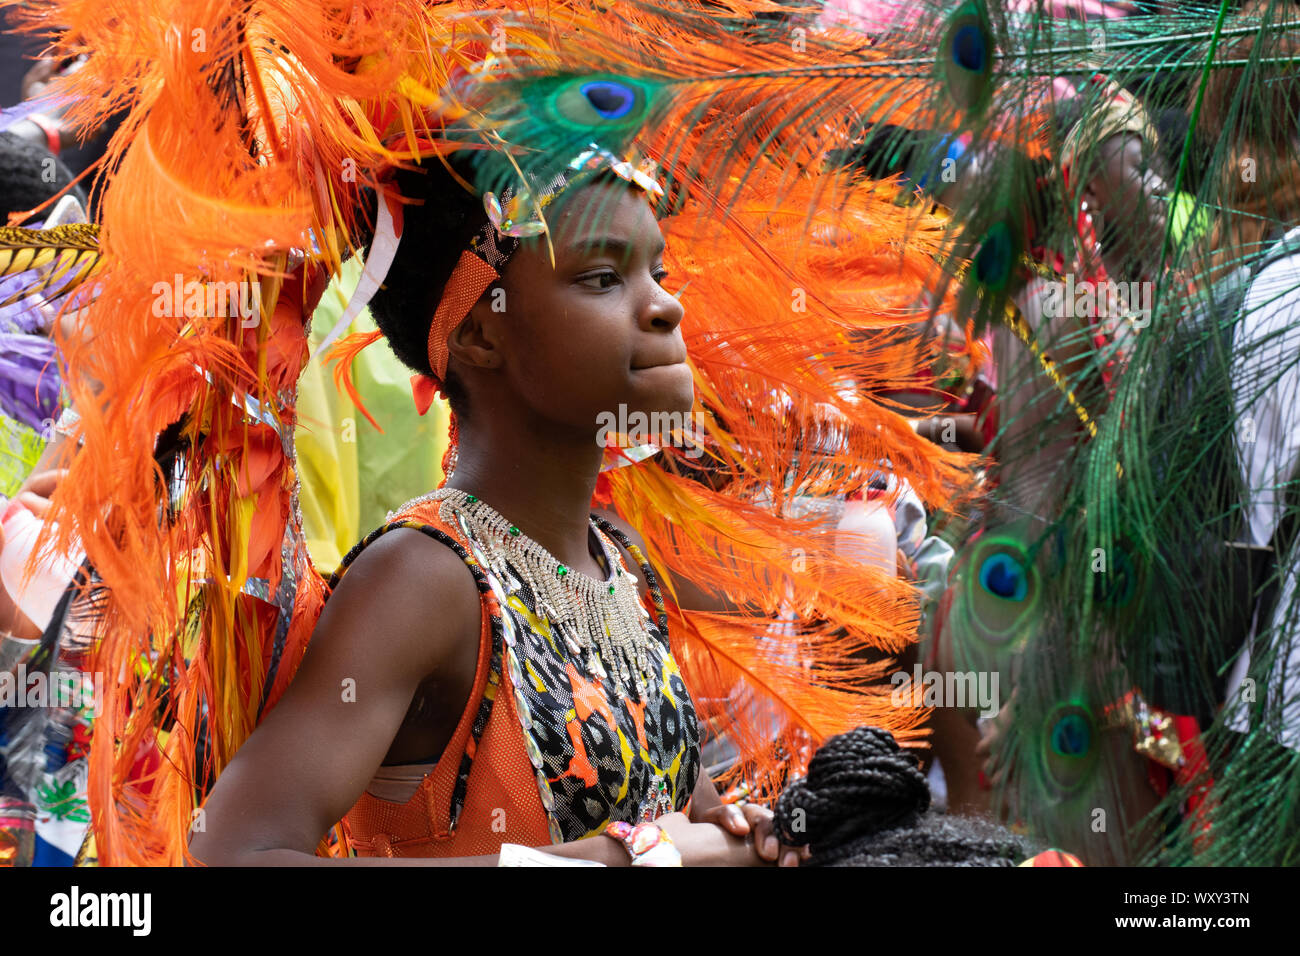 Junger Mann oder junge Frau im Tanz vertieft, in arancione bekleidet mit schönem Karnevalskostüm mit Schmuck aus Federn. Foto Stock